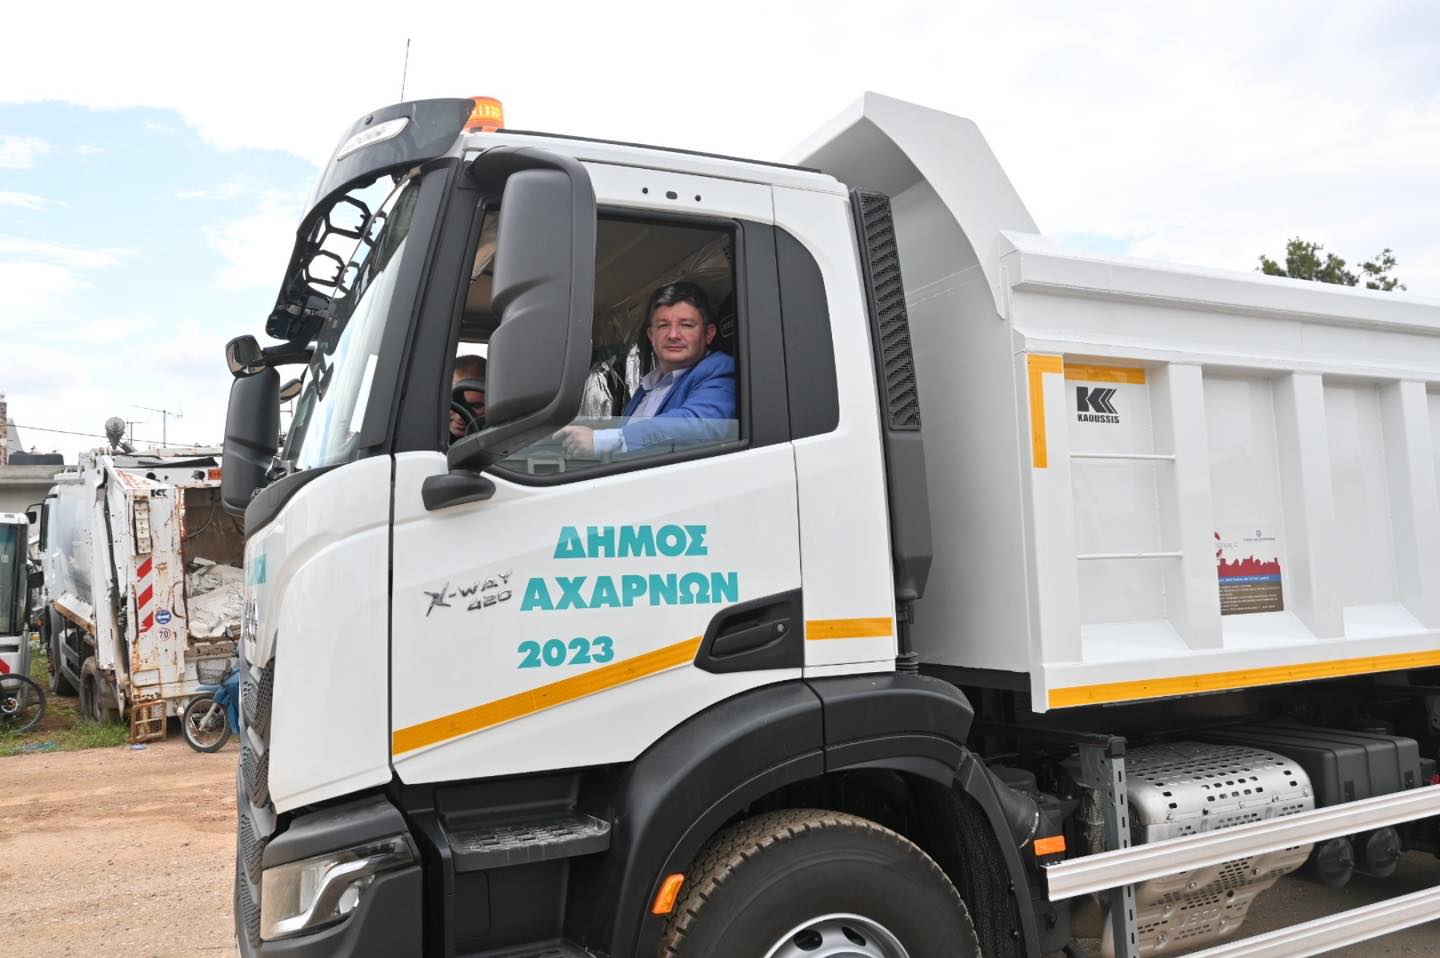 Δύο καινούργια φορτηγά αποκτά ο Δήμος Αχαρνών για την αποκομιδή βαρέων και ογκωδών αντικειμένων